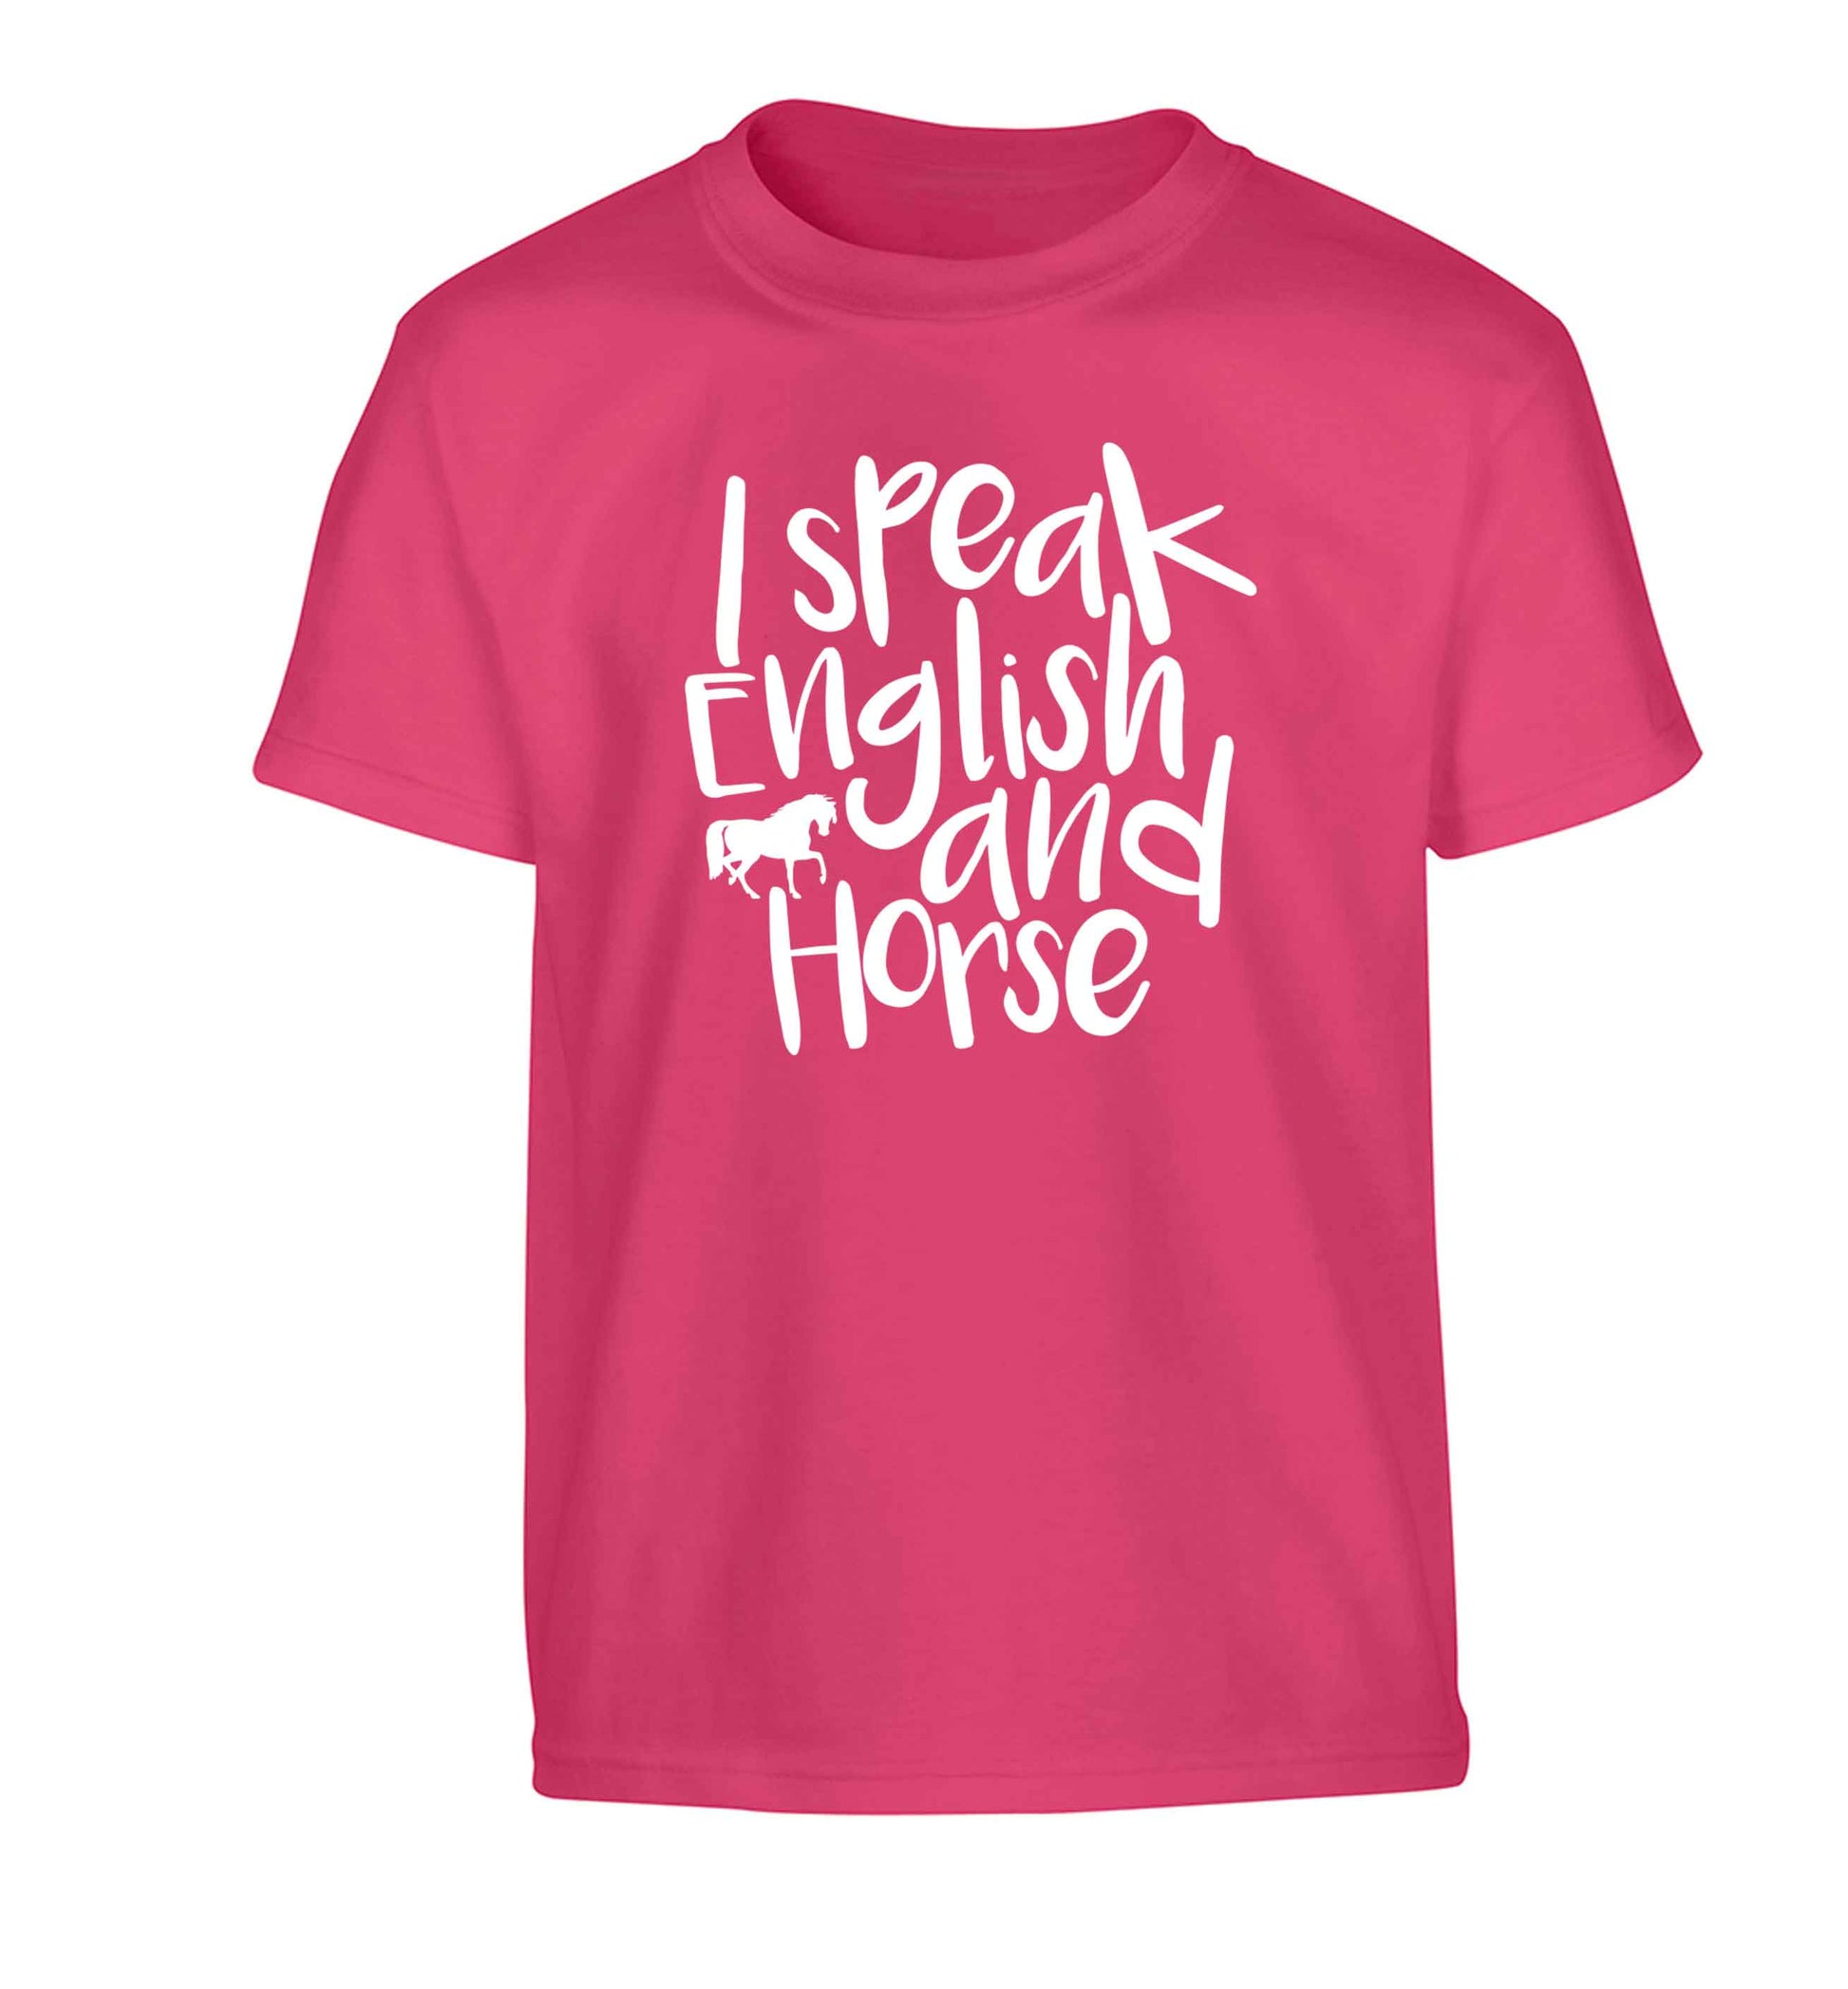 I speak English and horse Children's pink Tshirt 12-13 Years